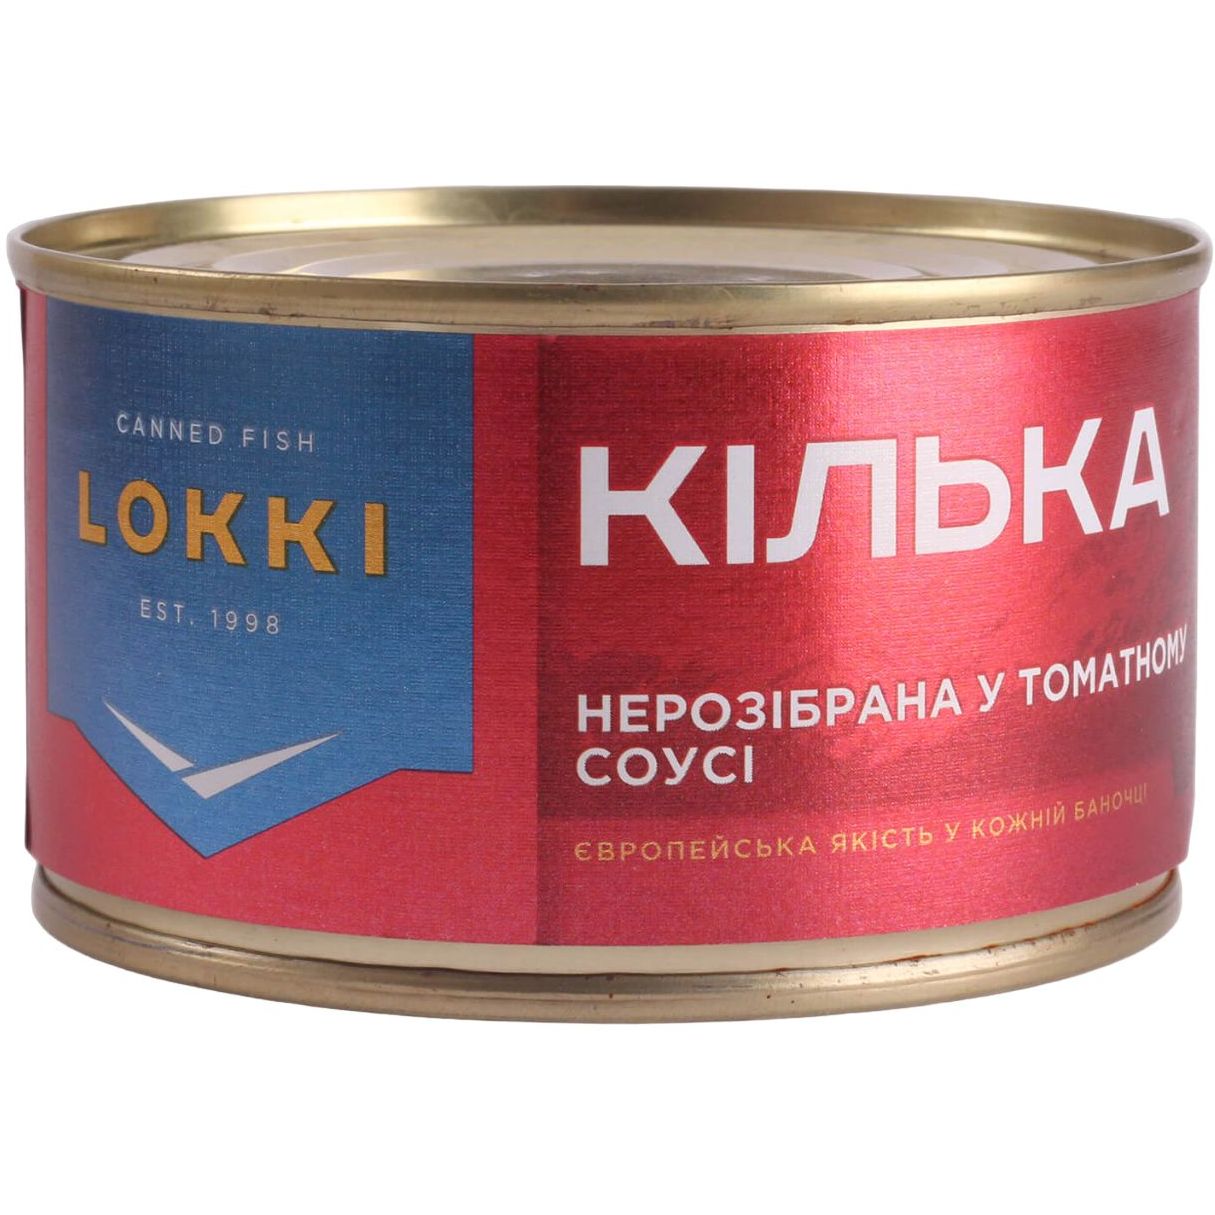 Кілька Lokki нерозібрана у томатному соусі 220 г (905921) - фото 1